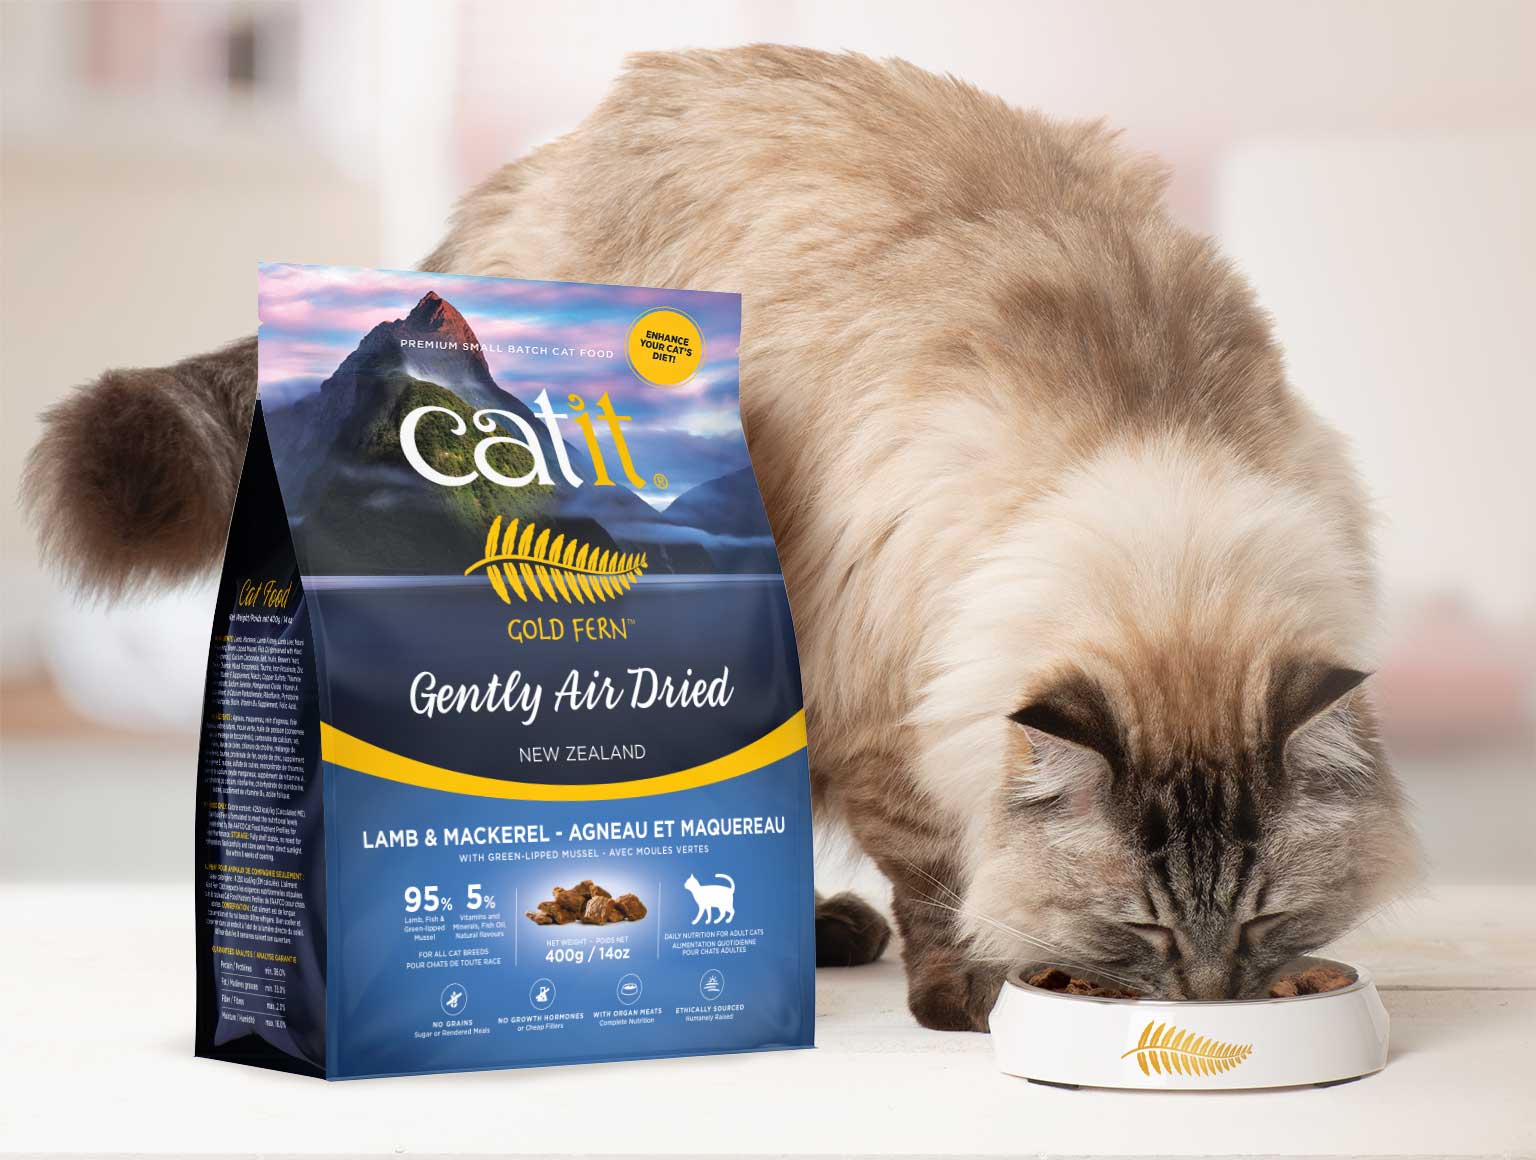 Comida seca para gatos con nutrientes bien conservados para mejorar la dieta de tu gato